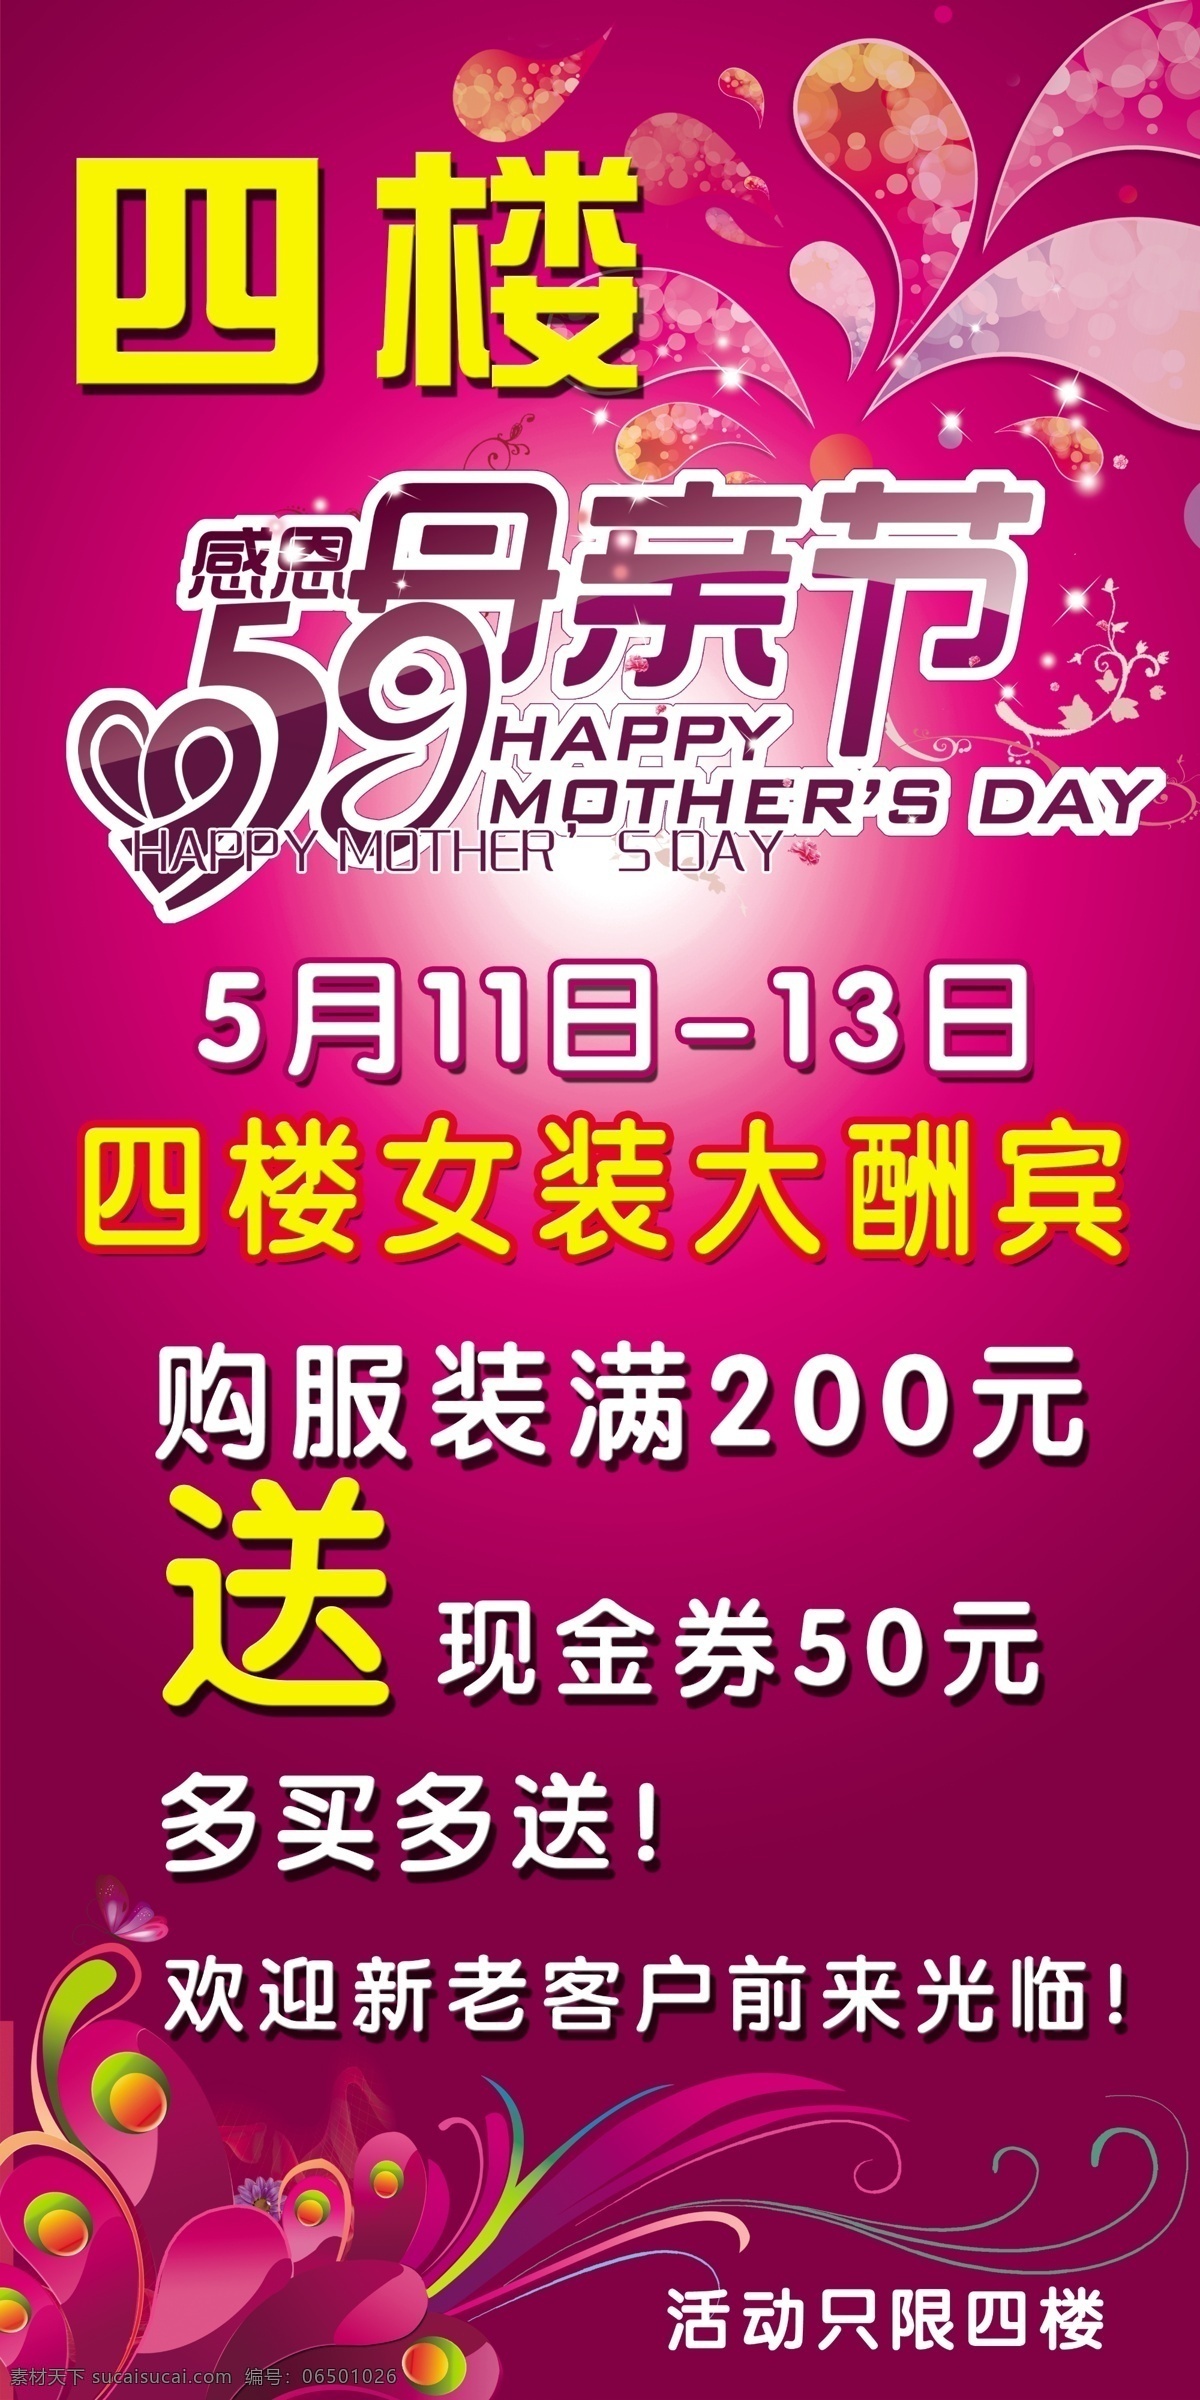 母亲节 宣传 模板下载 母亲节宣传 服装 花纹 线条 星星 广告设计模板 紫色